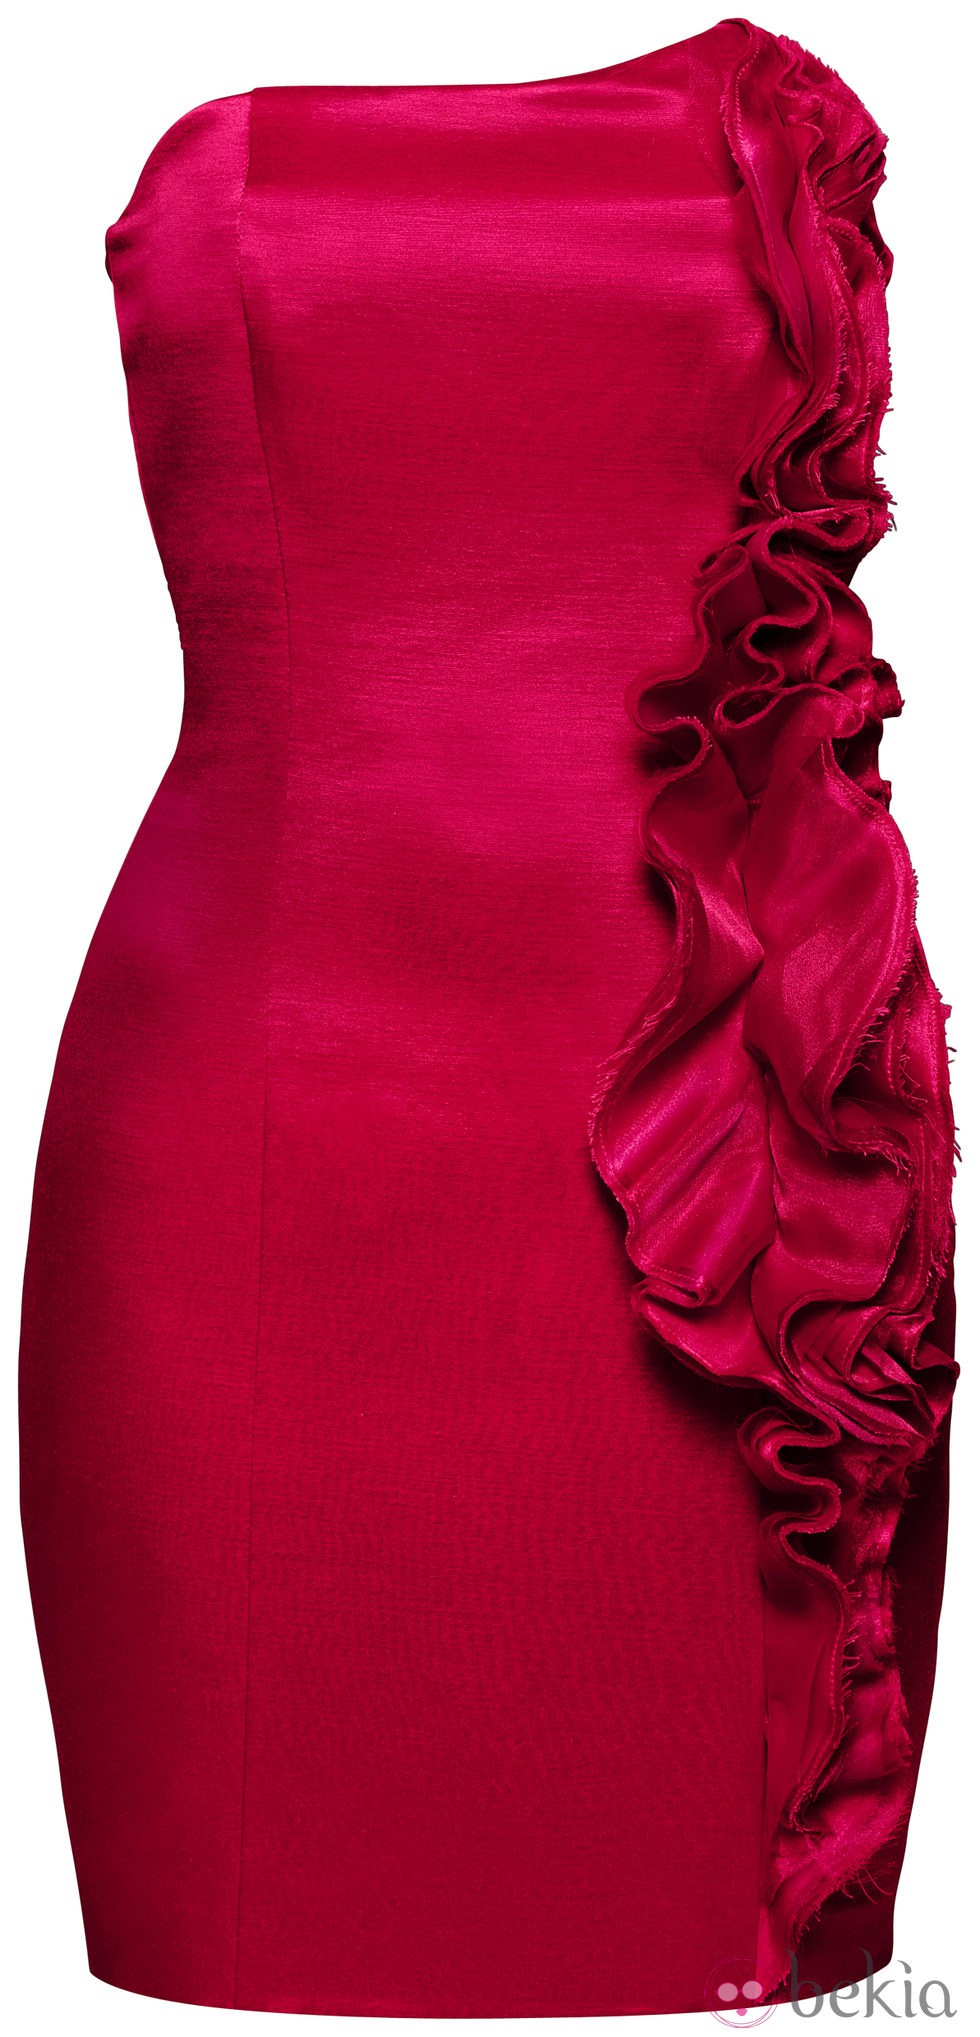 Vestido rojo palabra de honor de la nueva colección H&M Conscious